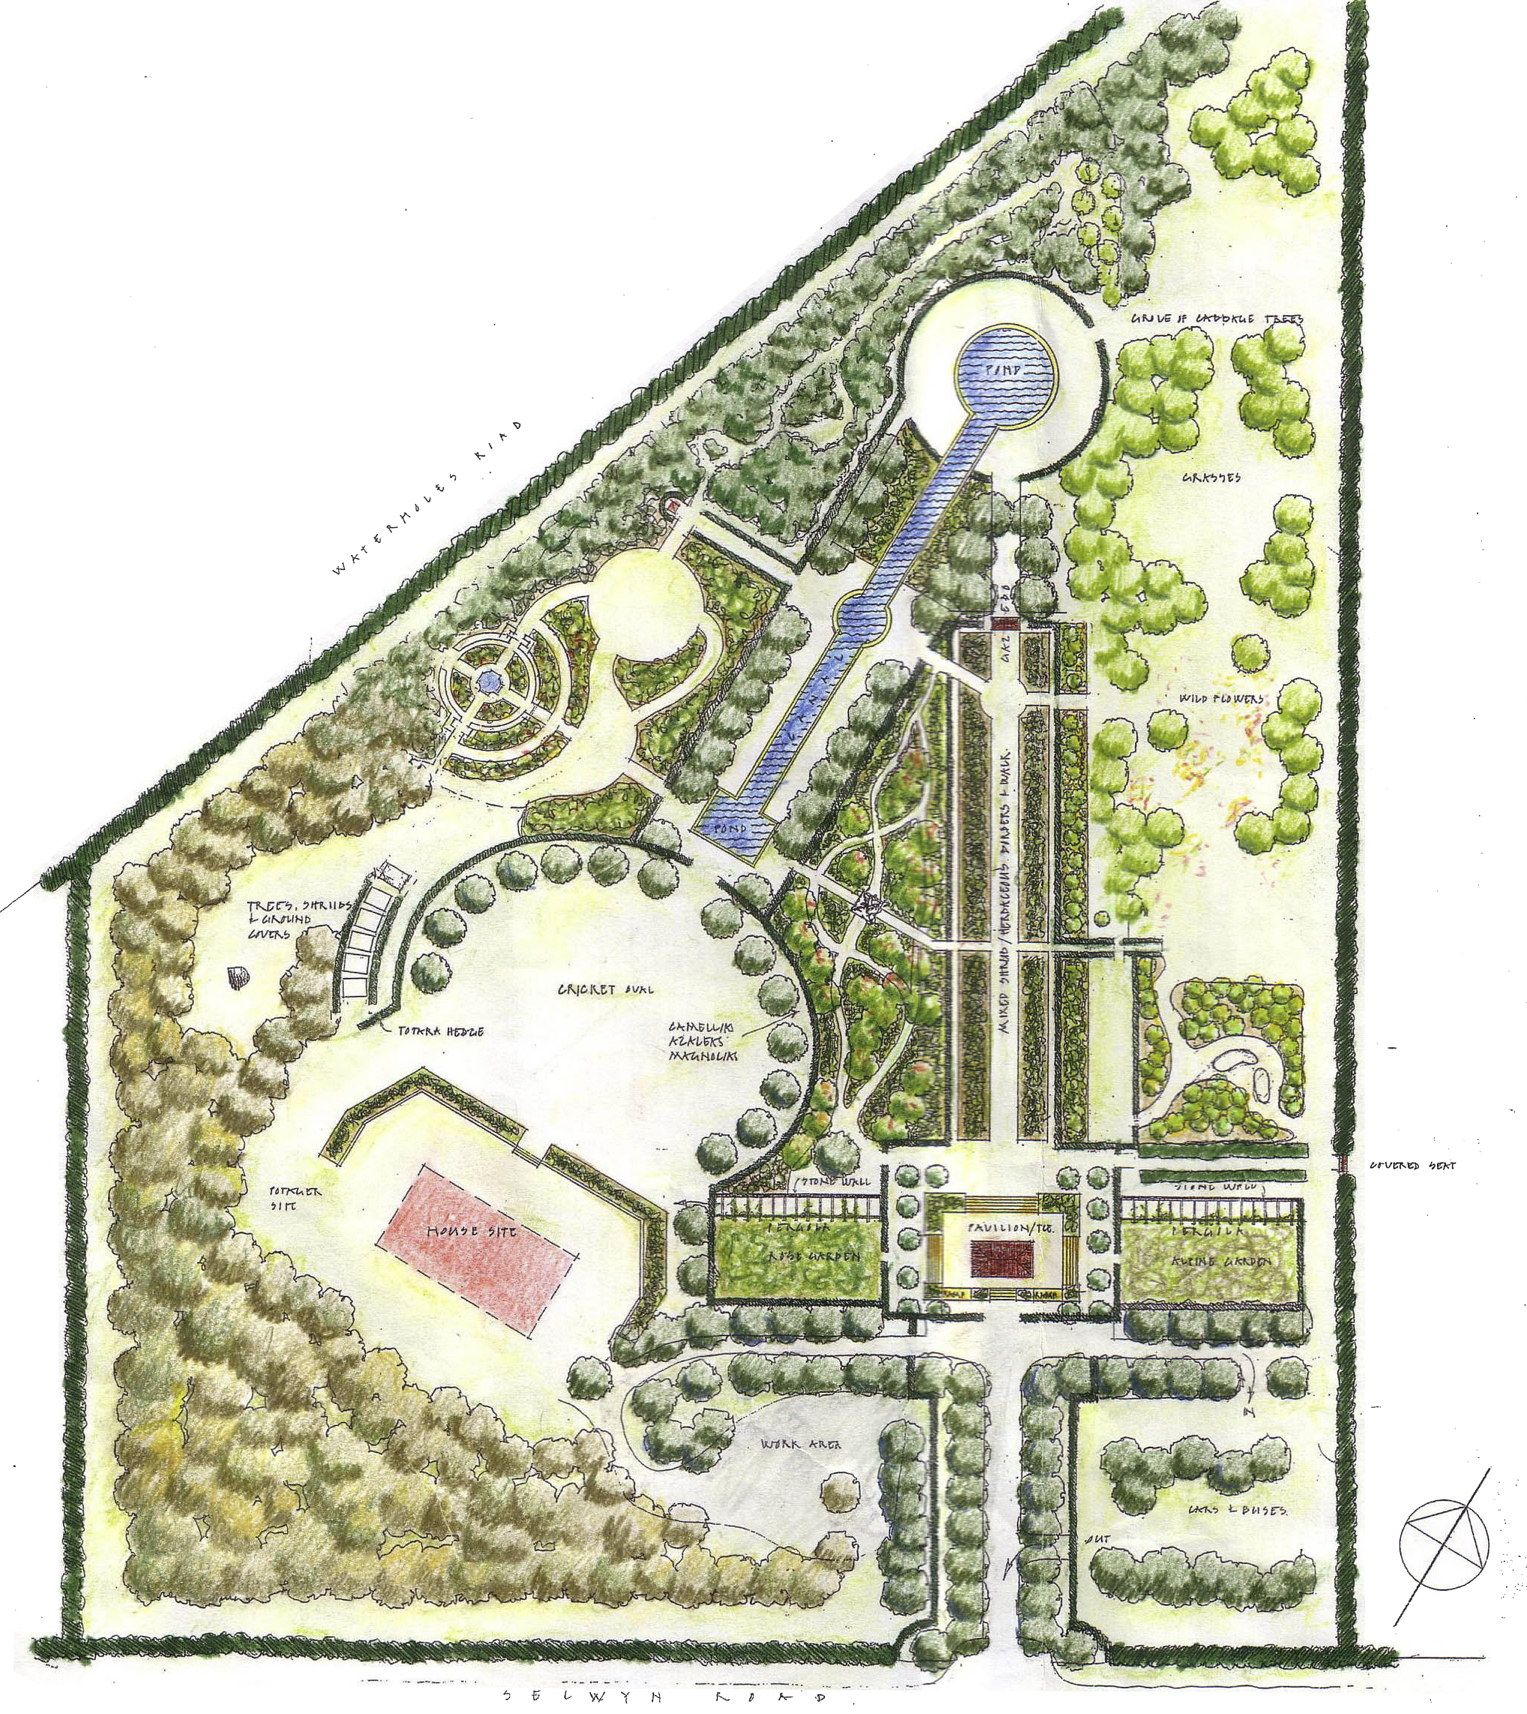 Top-down rendering of Broadfields Garden concept